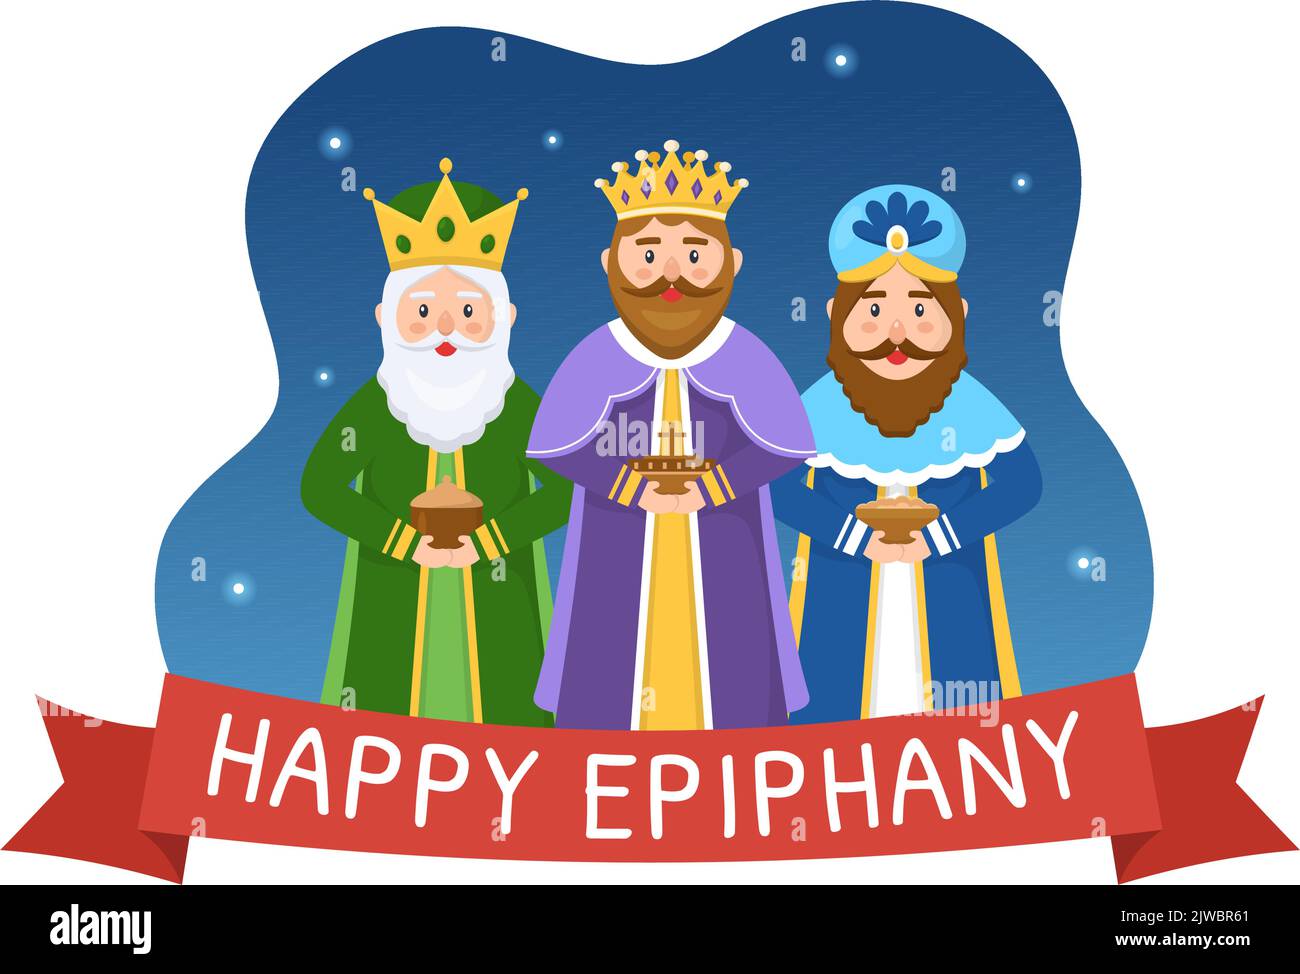 Happy Epiphany Day Template Dibujado a mano Cartoon Flat Illustration Festival Cristiano a la fe en la divinidad de Jesús desde su venida al mundo Ilustración del Vector